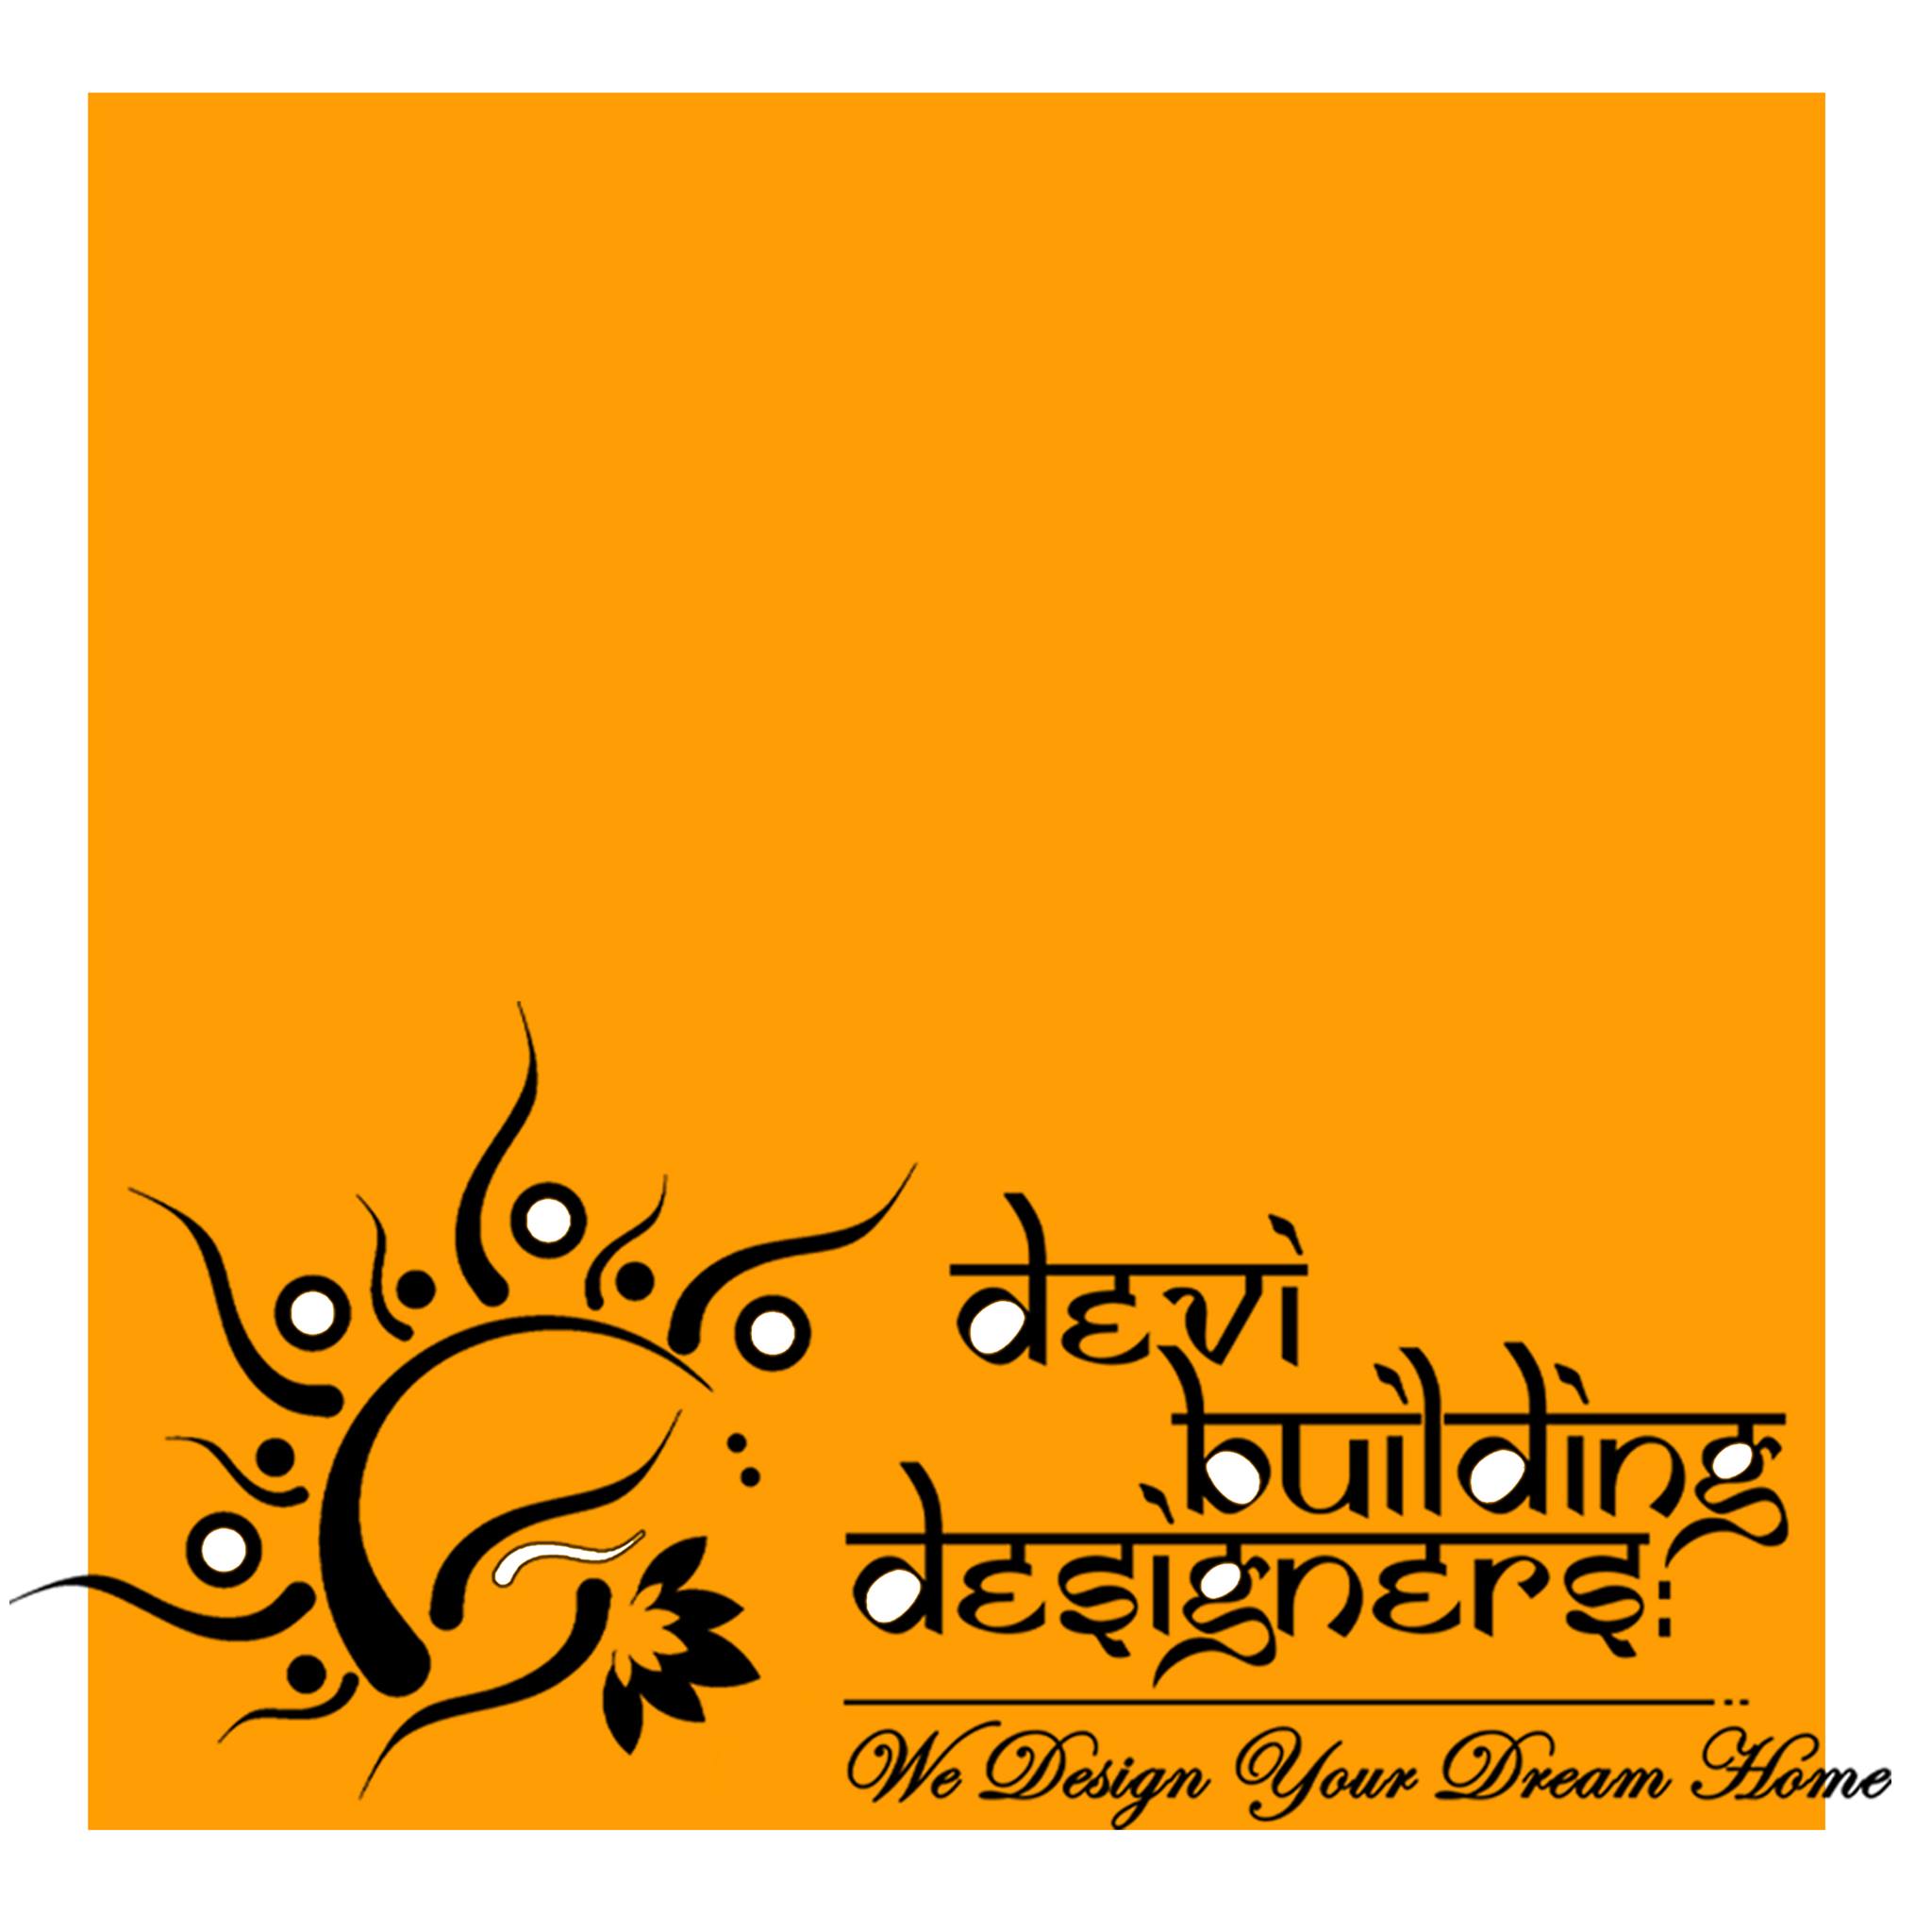 Devi Building Designers|Legal Services|Professional Services